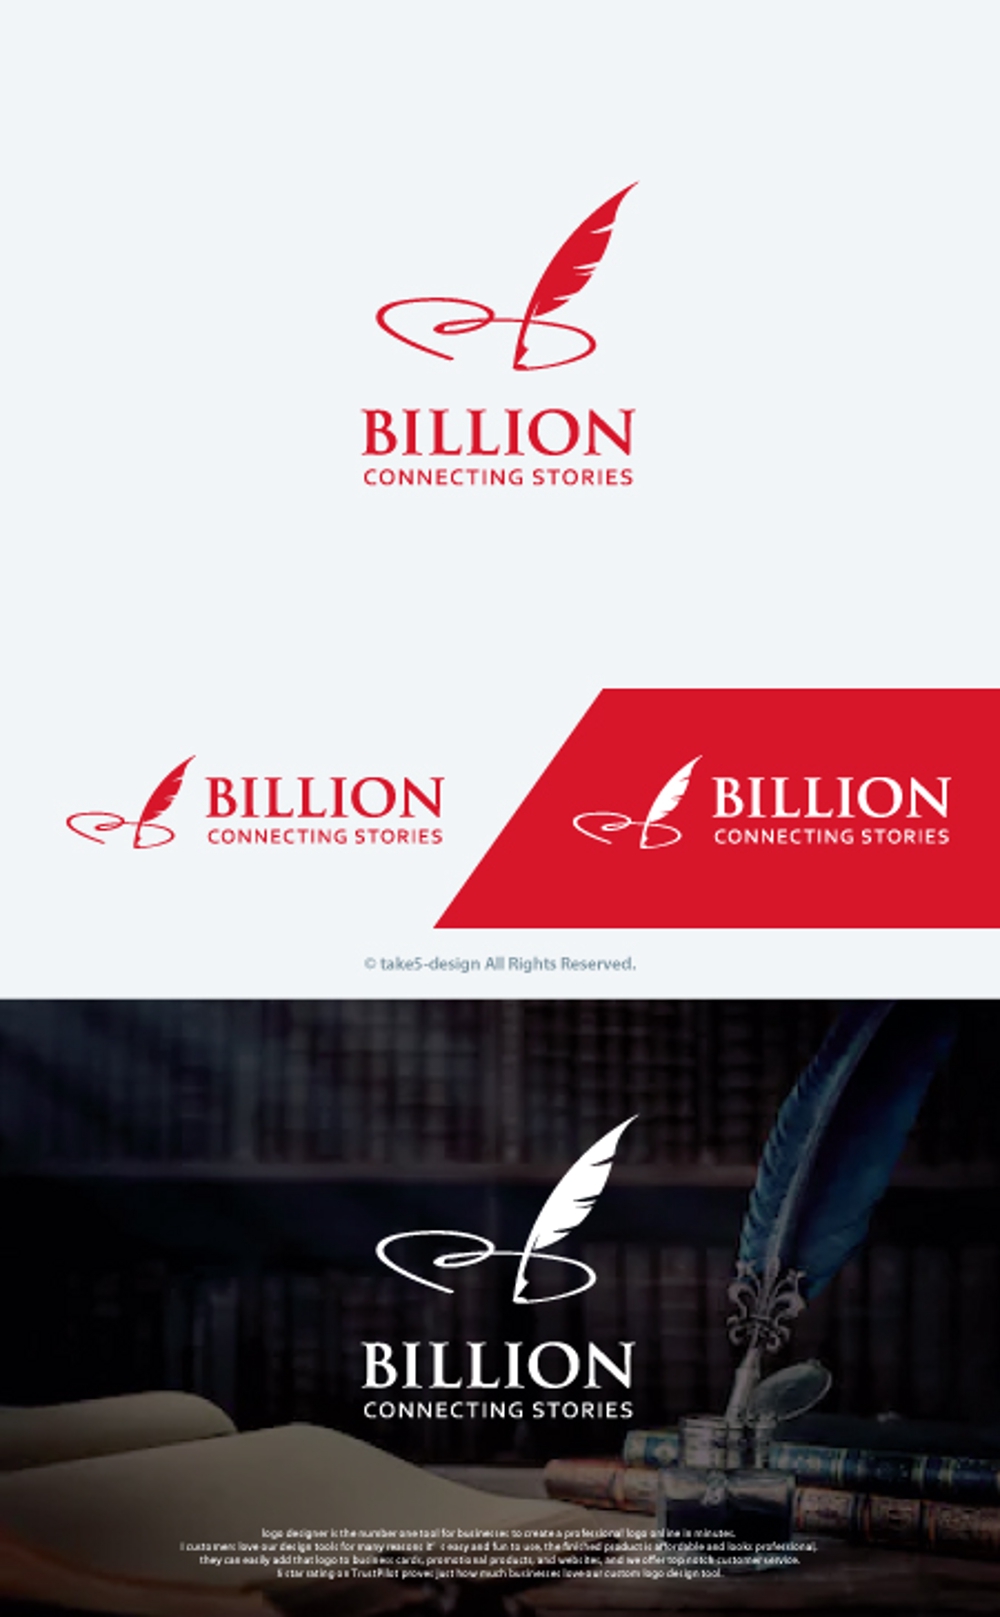 「物語を"つなぐ"企業」合同会社BILLIONの企業ロゴを募集します。